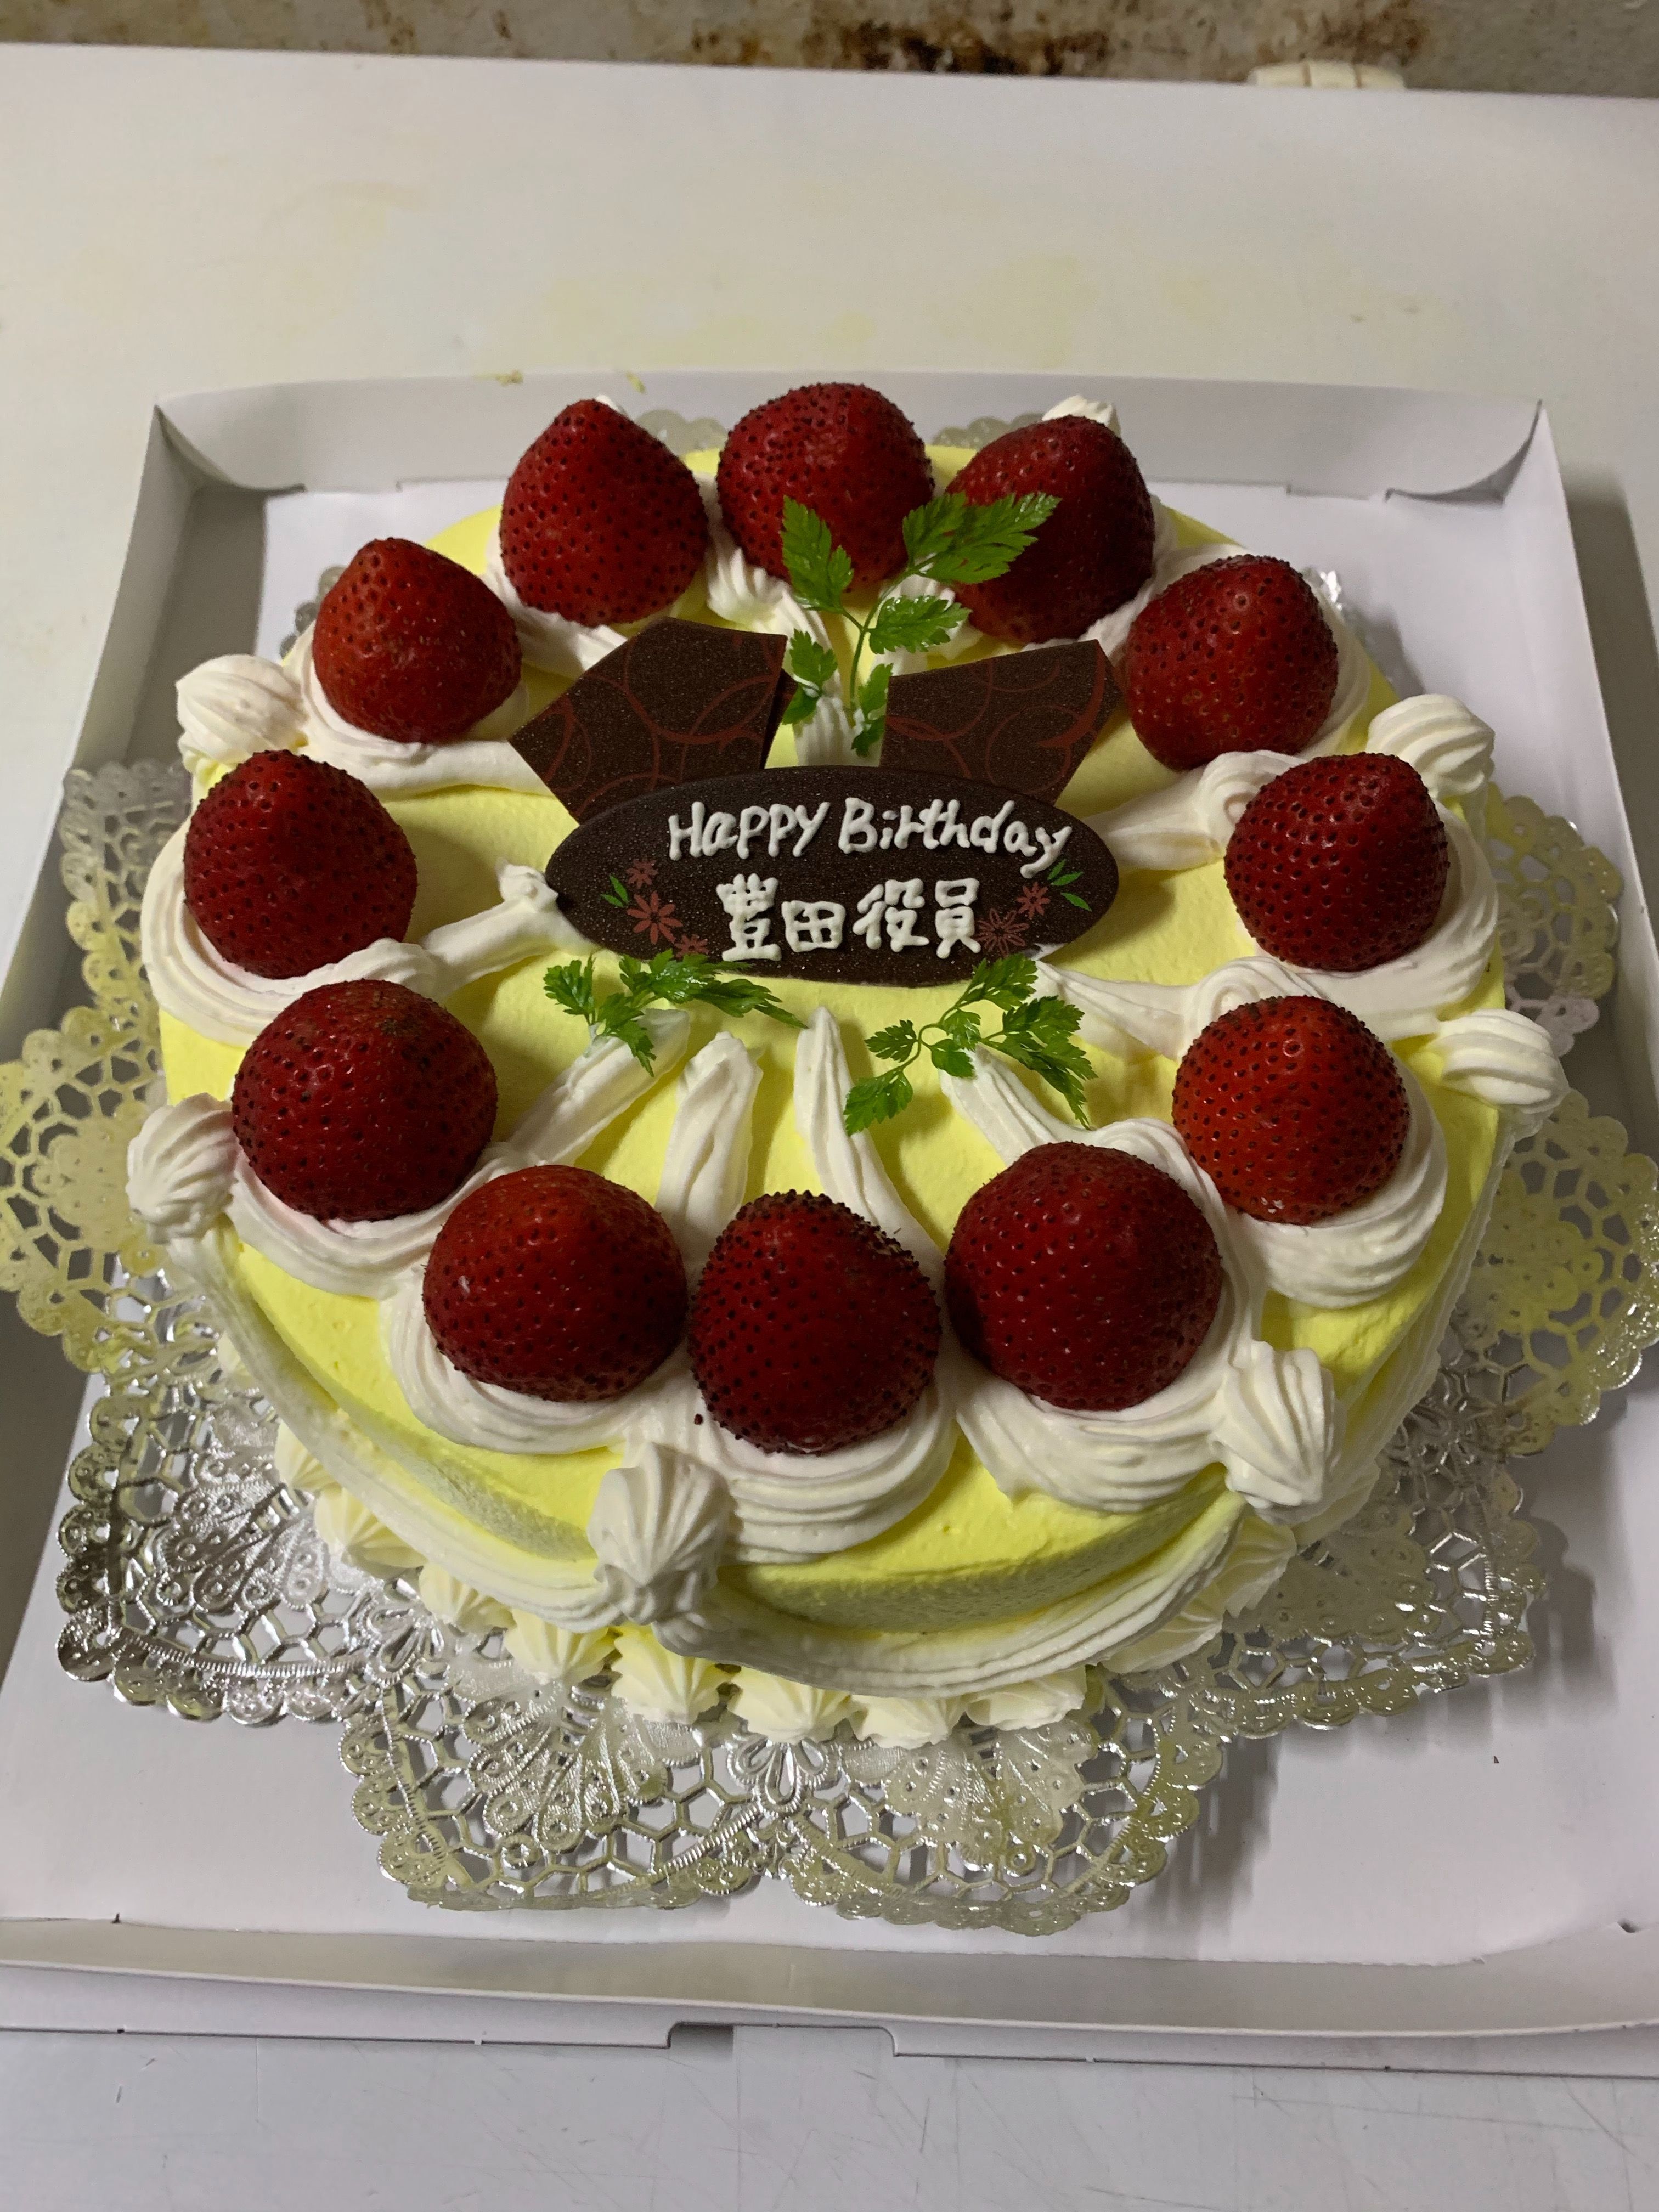 お誕生日ケーキ宅配 東京 横浜 川崎 デコレーションケーキの